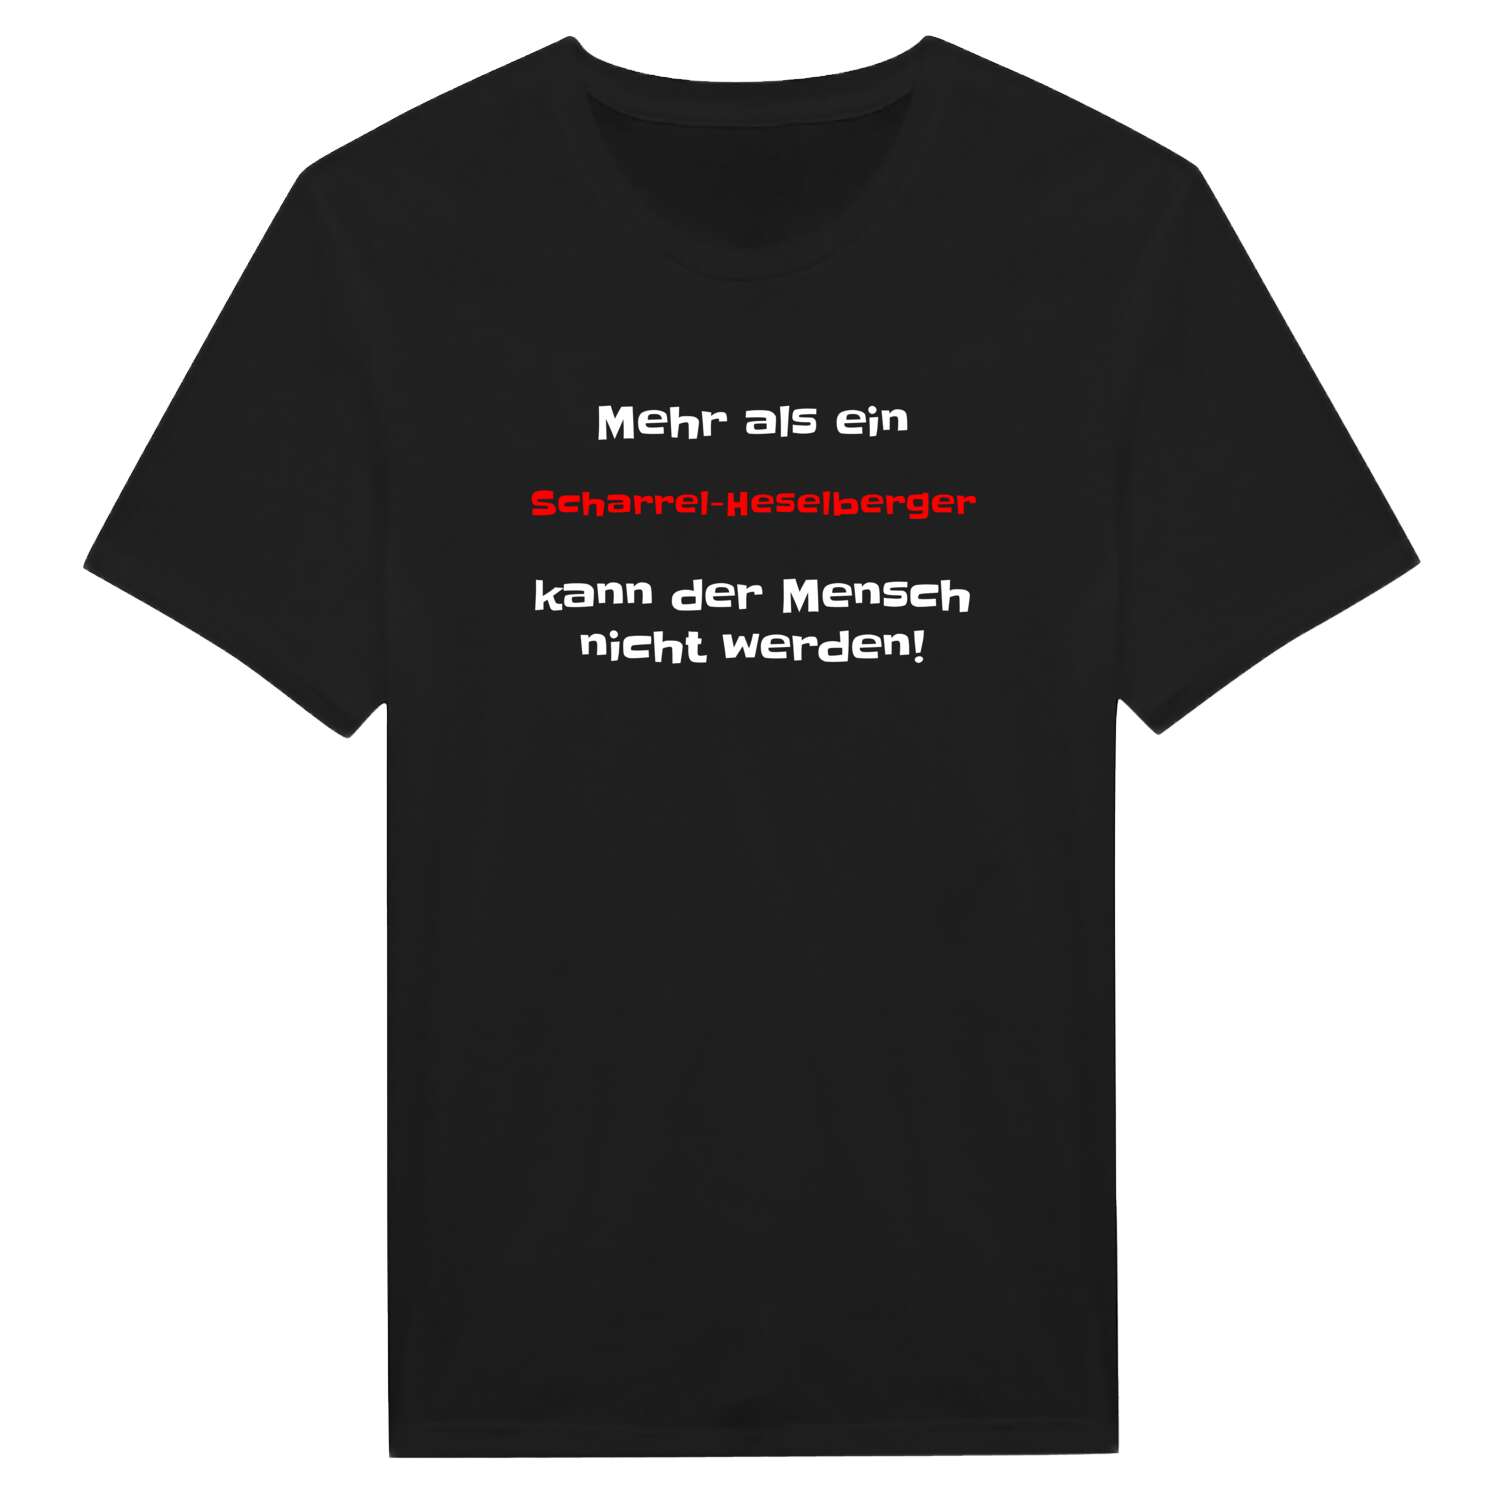 Scharrel-Heselberg T-Shirt »Mehr als ein«